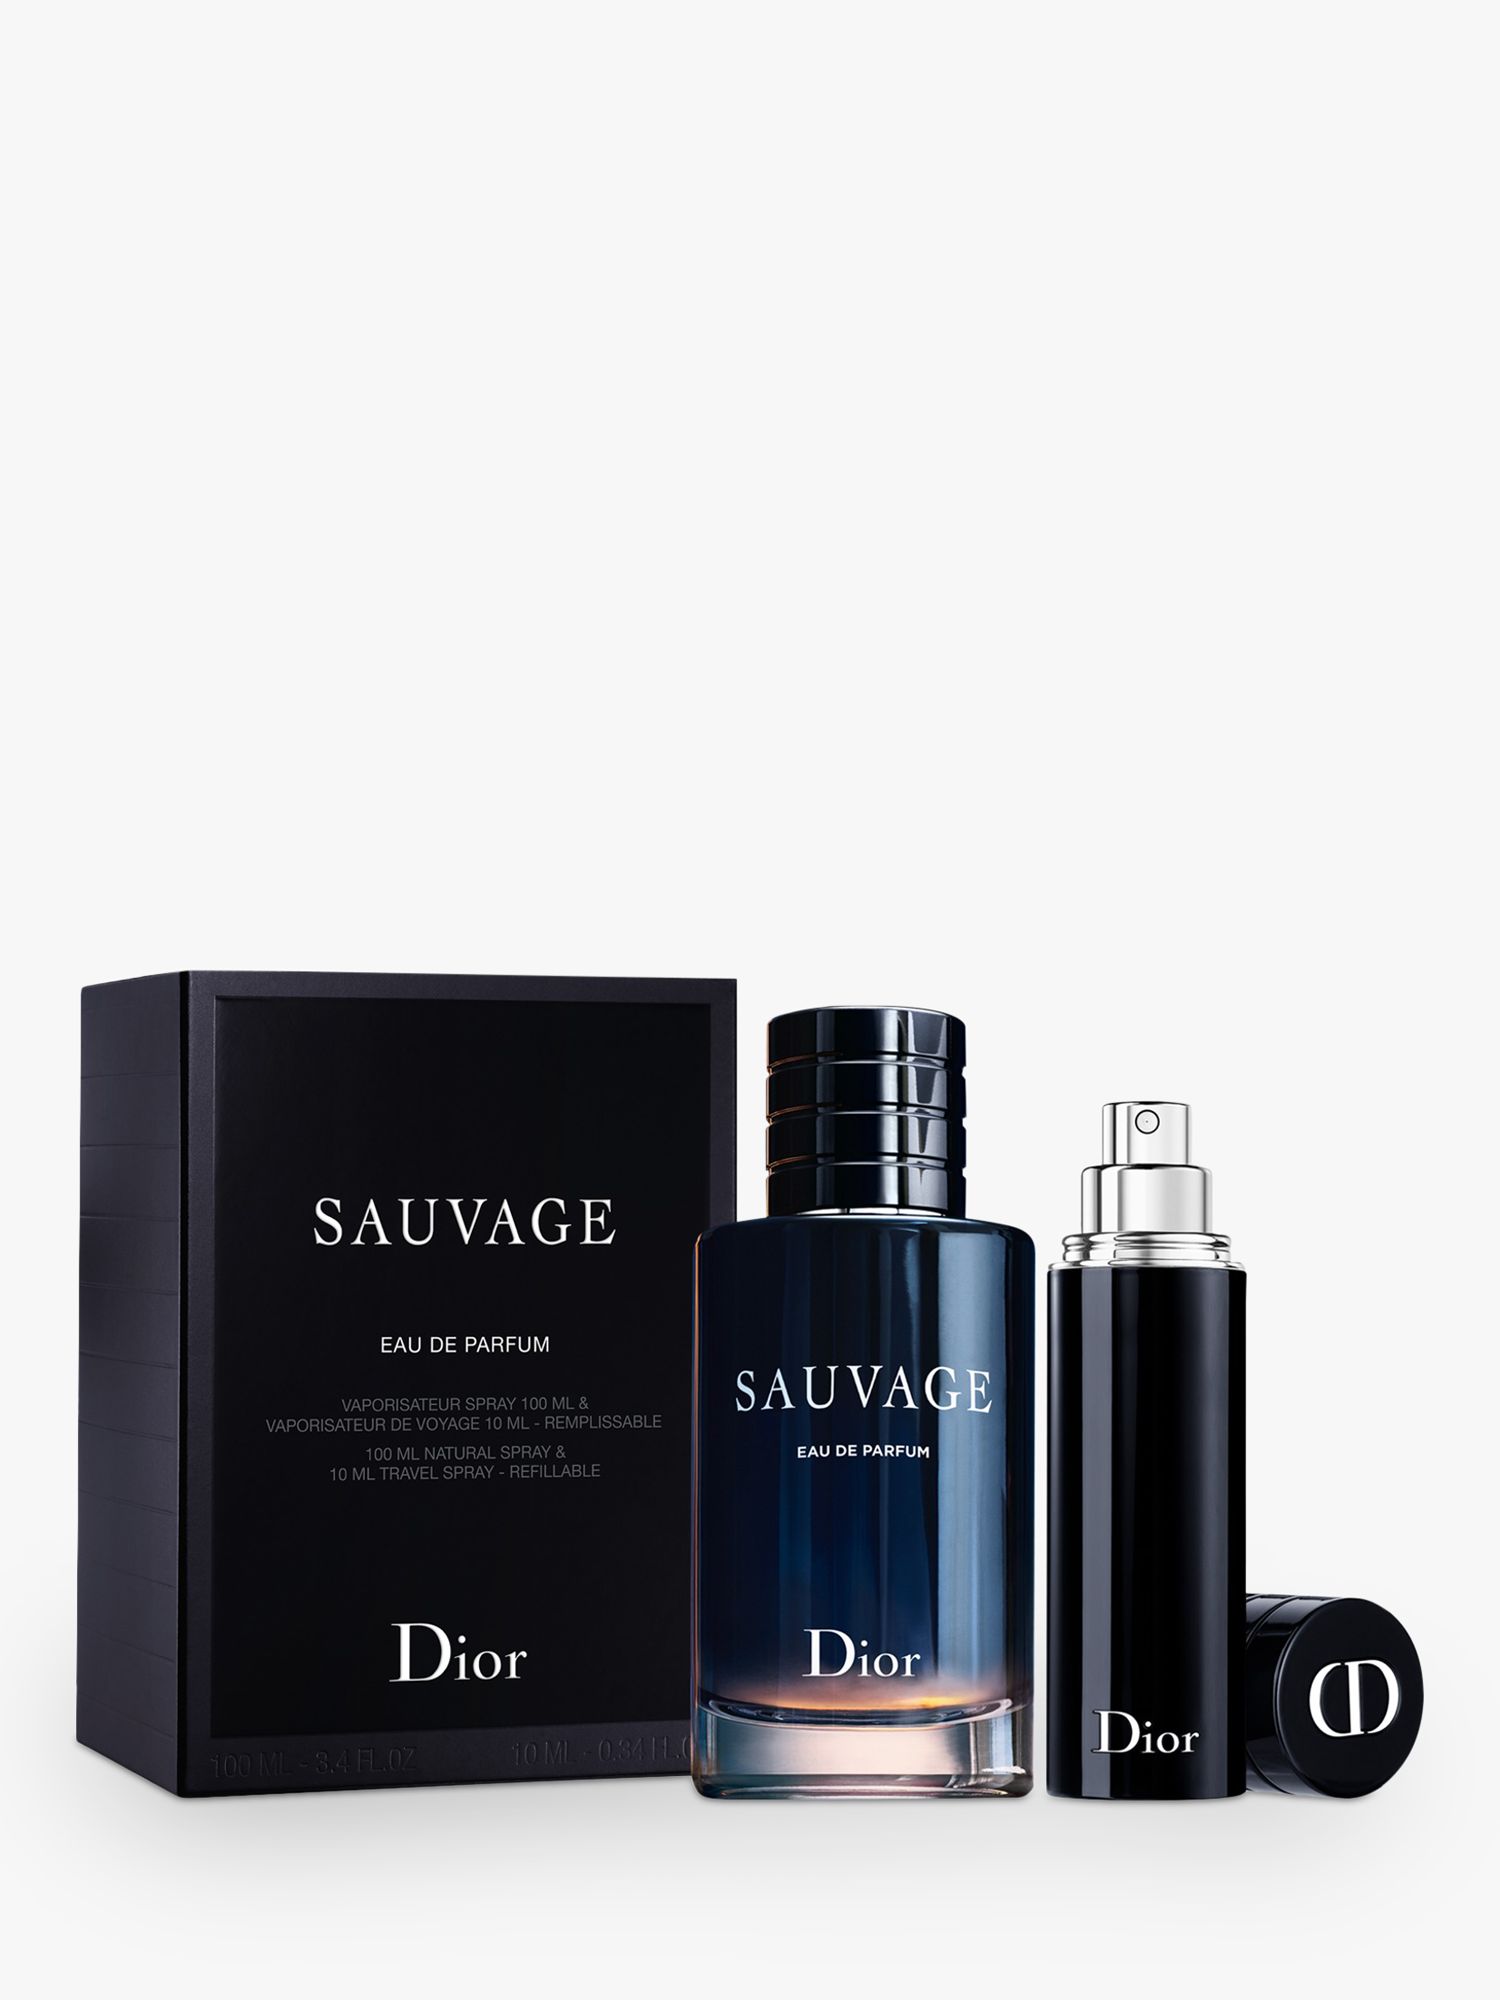 dior sauvage box set